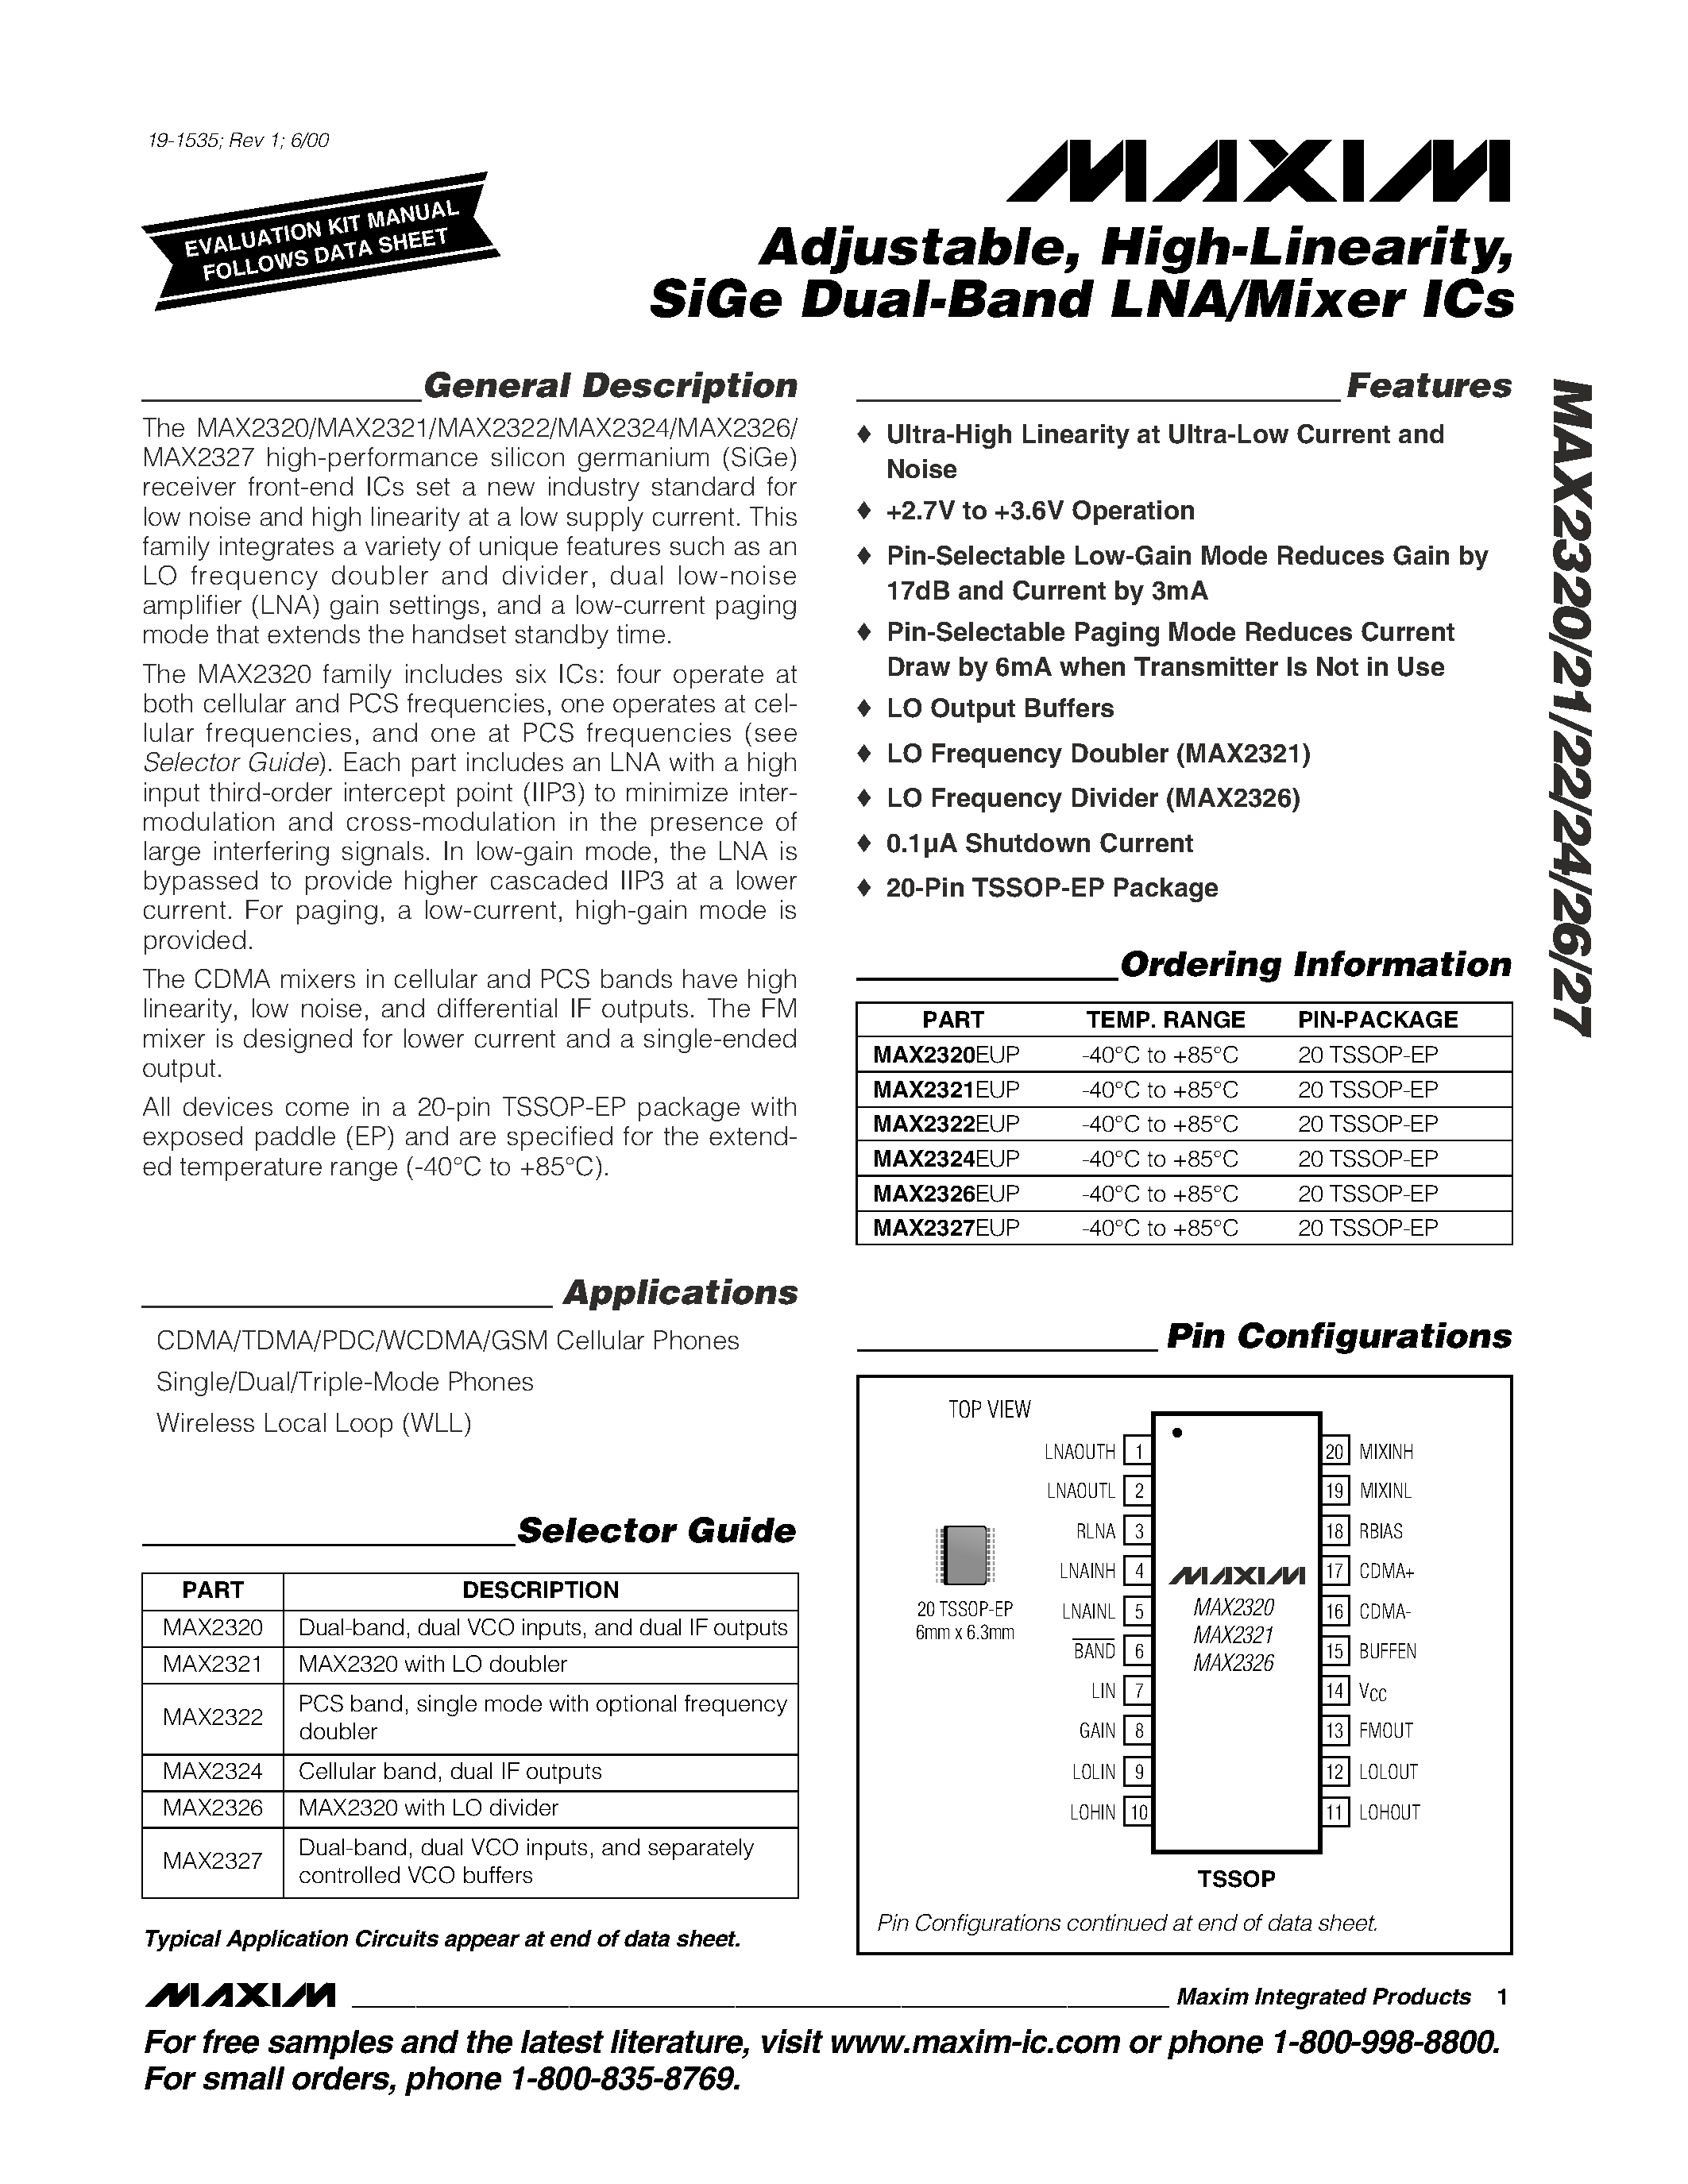 Даташит MAX2326EUP - Adjustable / High-Linearity / SiGe Dual-Band LNA/Mixer ICs страница 1